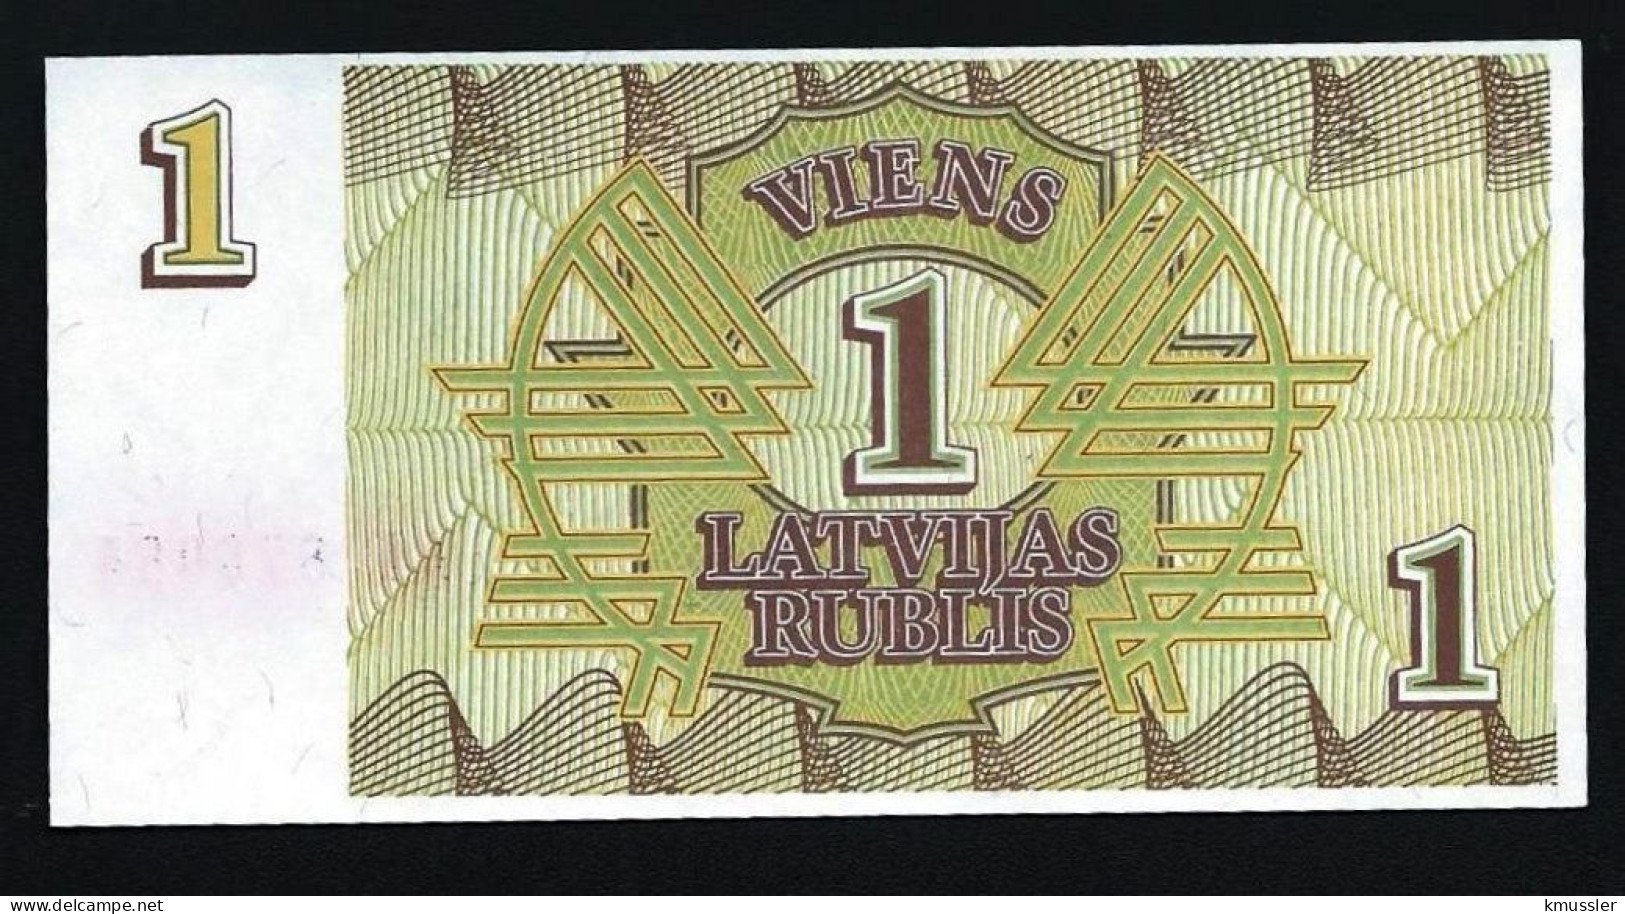 # # # Banknote Lettland (Latvijas) 1 Rubel (Rublis) 1992 UNC # # # - Latvia